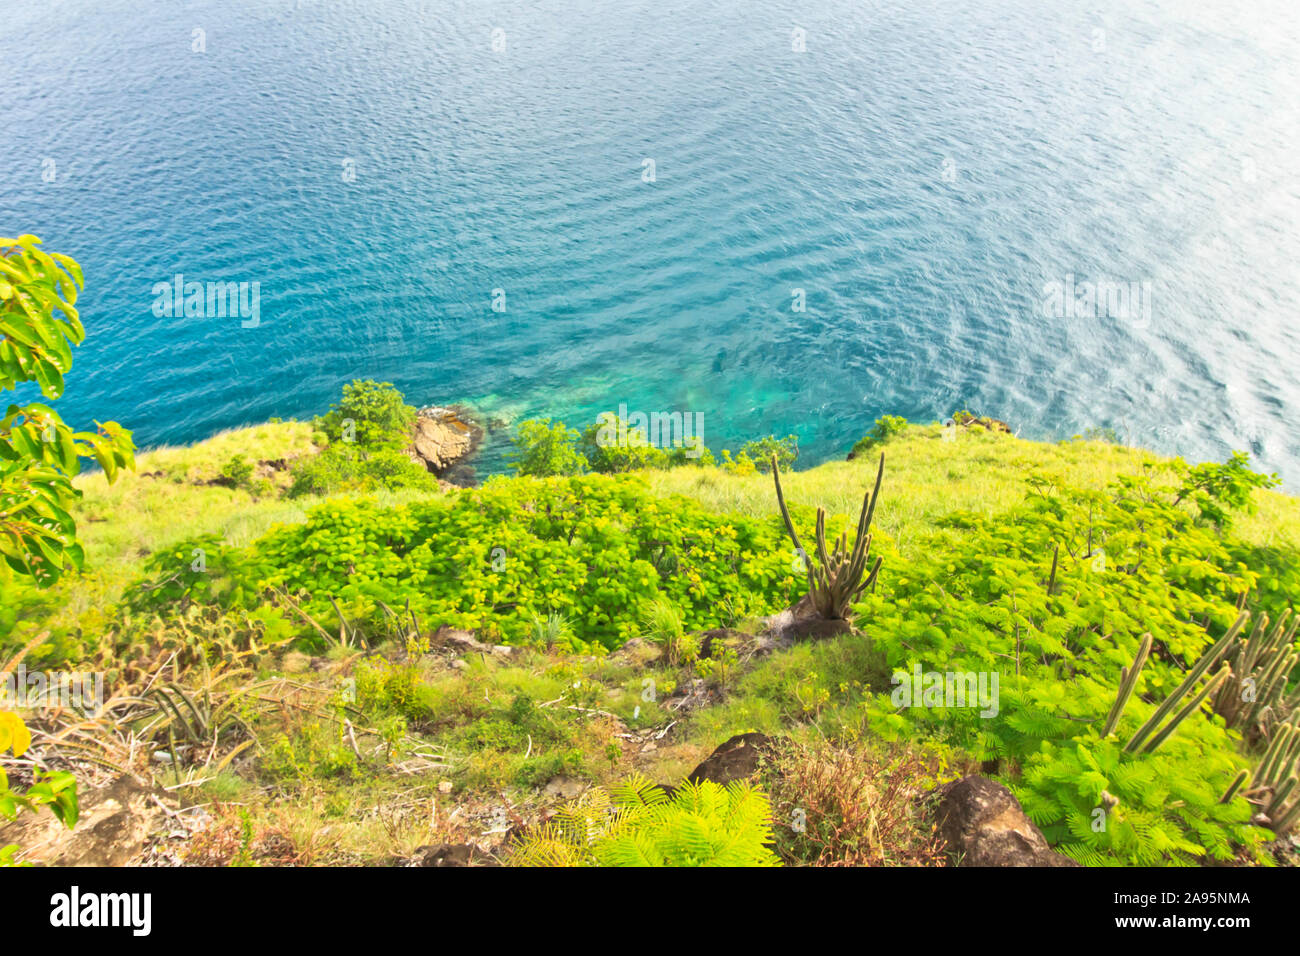 Landschaftlich schöne grüne Landschaft sanft abfallend in das ruhige Meer unten Stockfoto